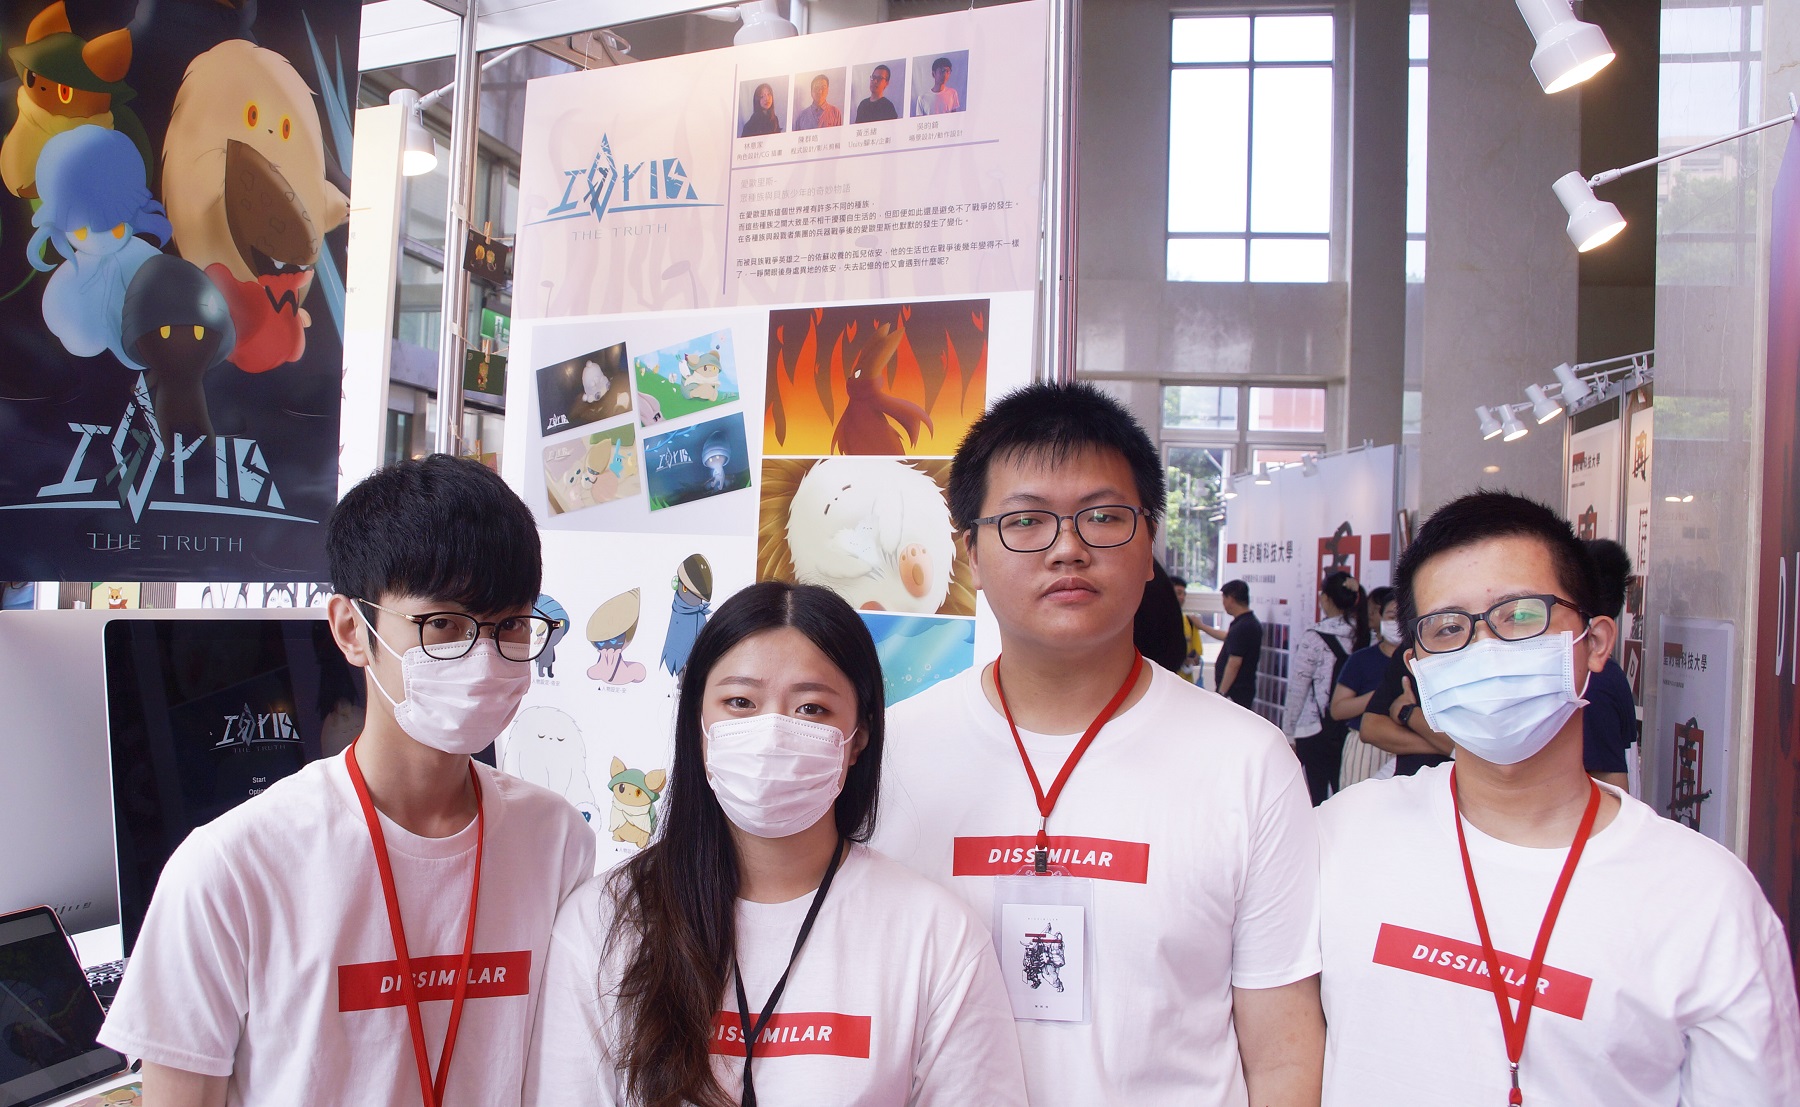 吳昀錡（左起）、林意家、陳群皓、黃丞緒製作的《愛歐里斯》從CG插畫、動作設計、影片剪輯，完整呈現學生高超技術。